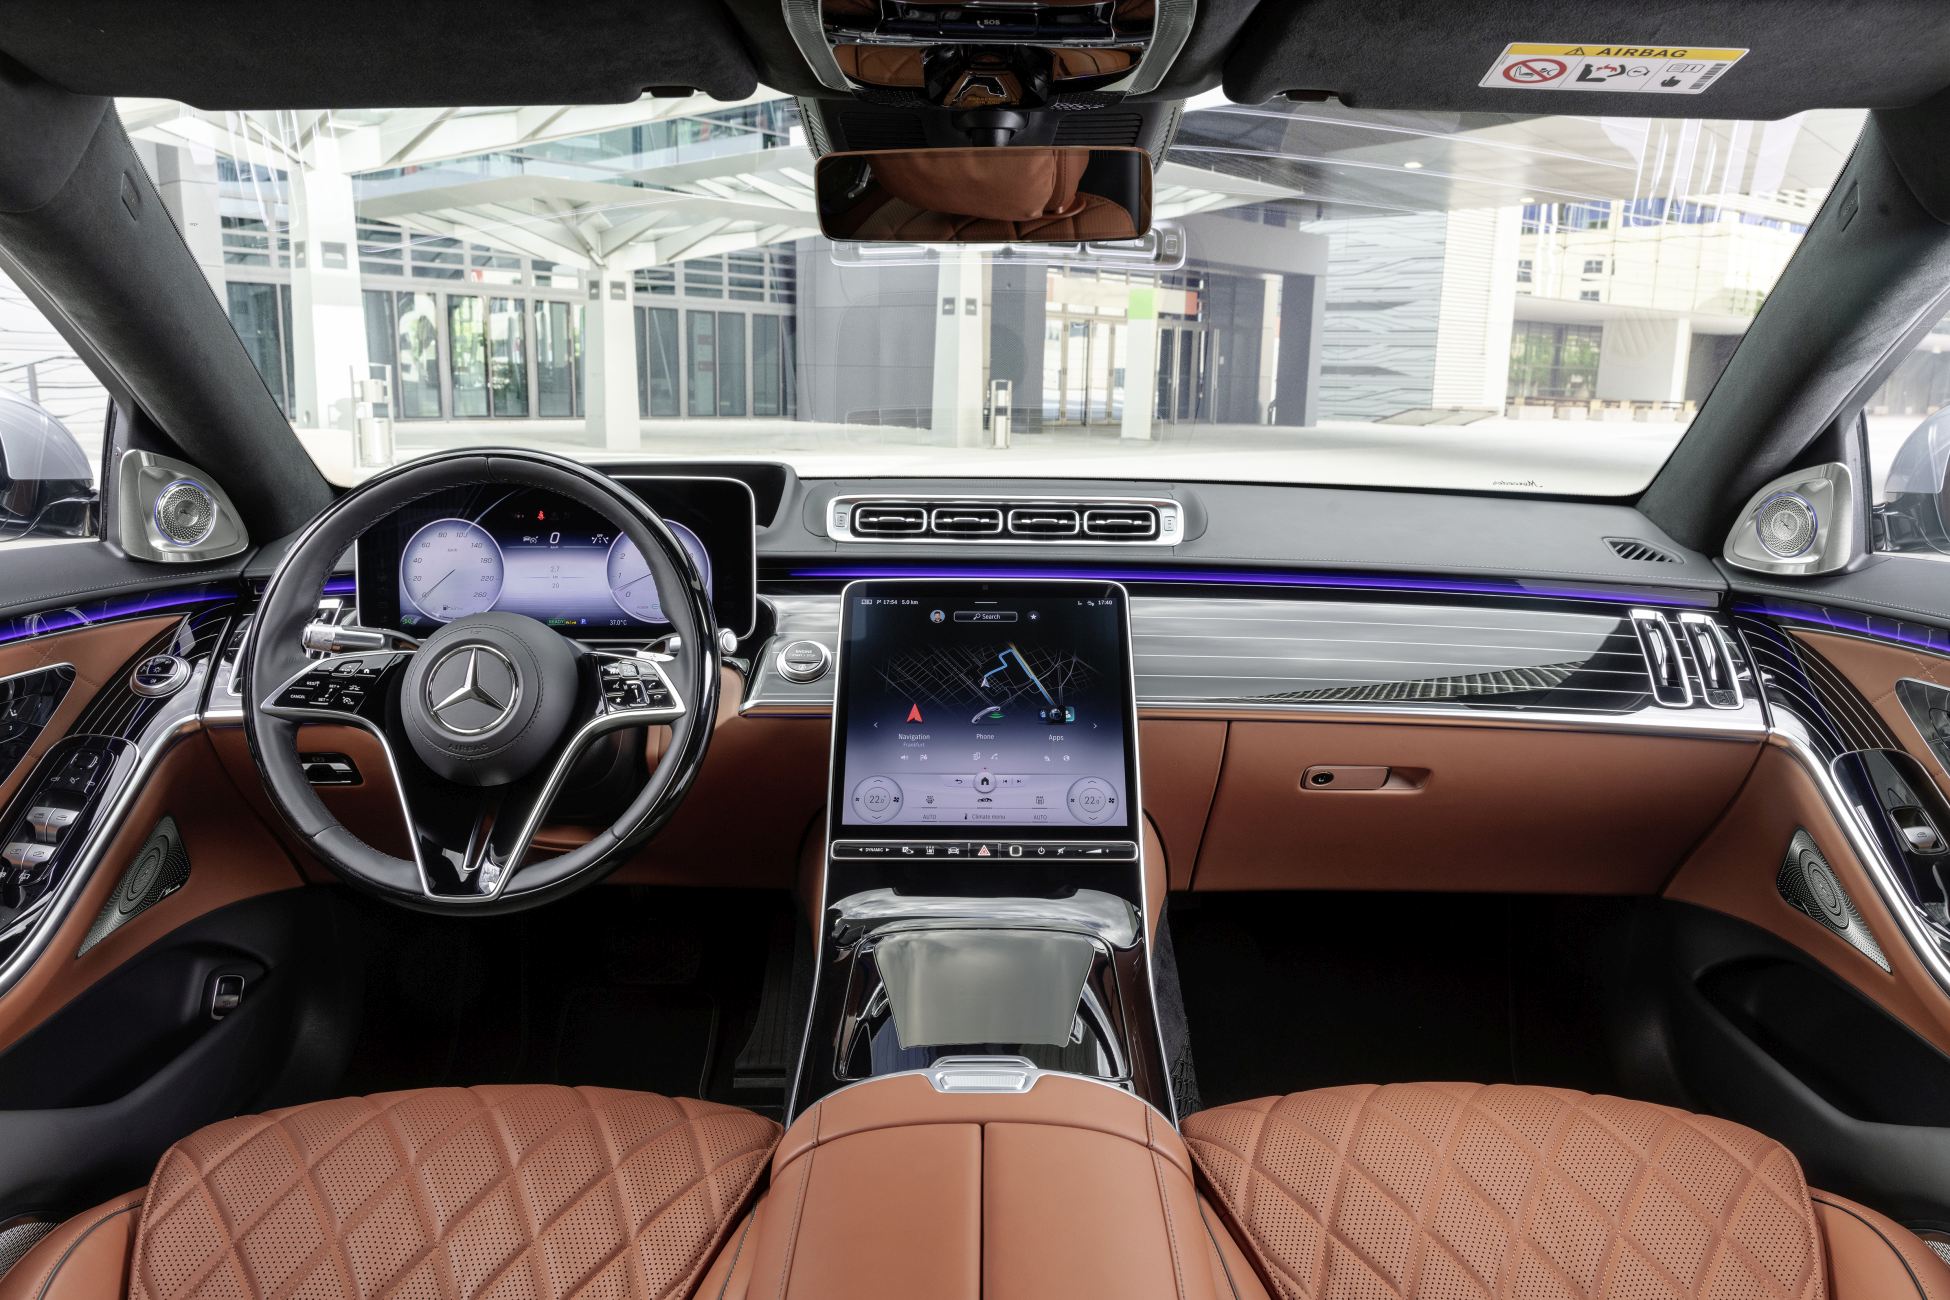 Novo Mercedes Benz Classe S A Nova Imagem Do Luxo Associada A Tecnologia